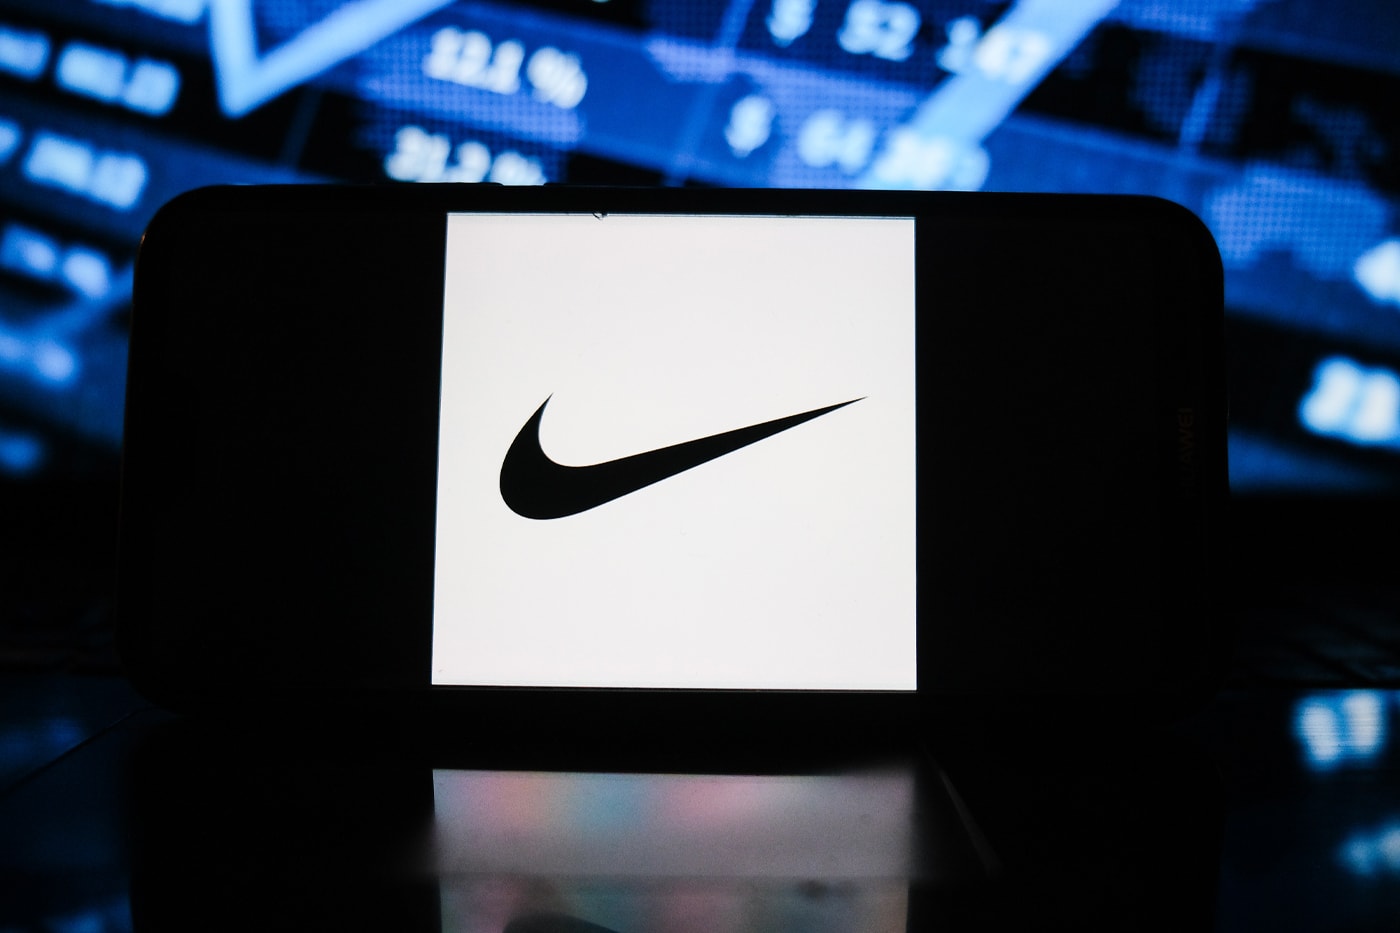 ナイキがデータ統合などのサービスを提供するスタートアップ企業 データローグを買収 Nike Inc. Datalogue Data Integration Platform Digital New York Based Startup Acquisitions Swoosh Consumer-led digital transformation plan